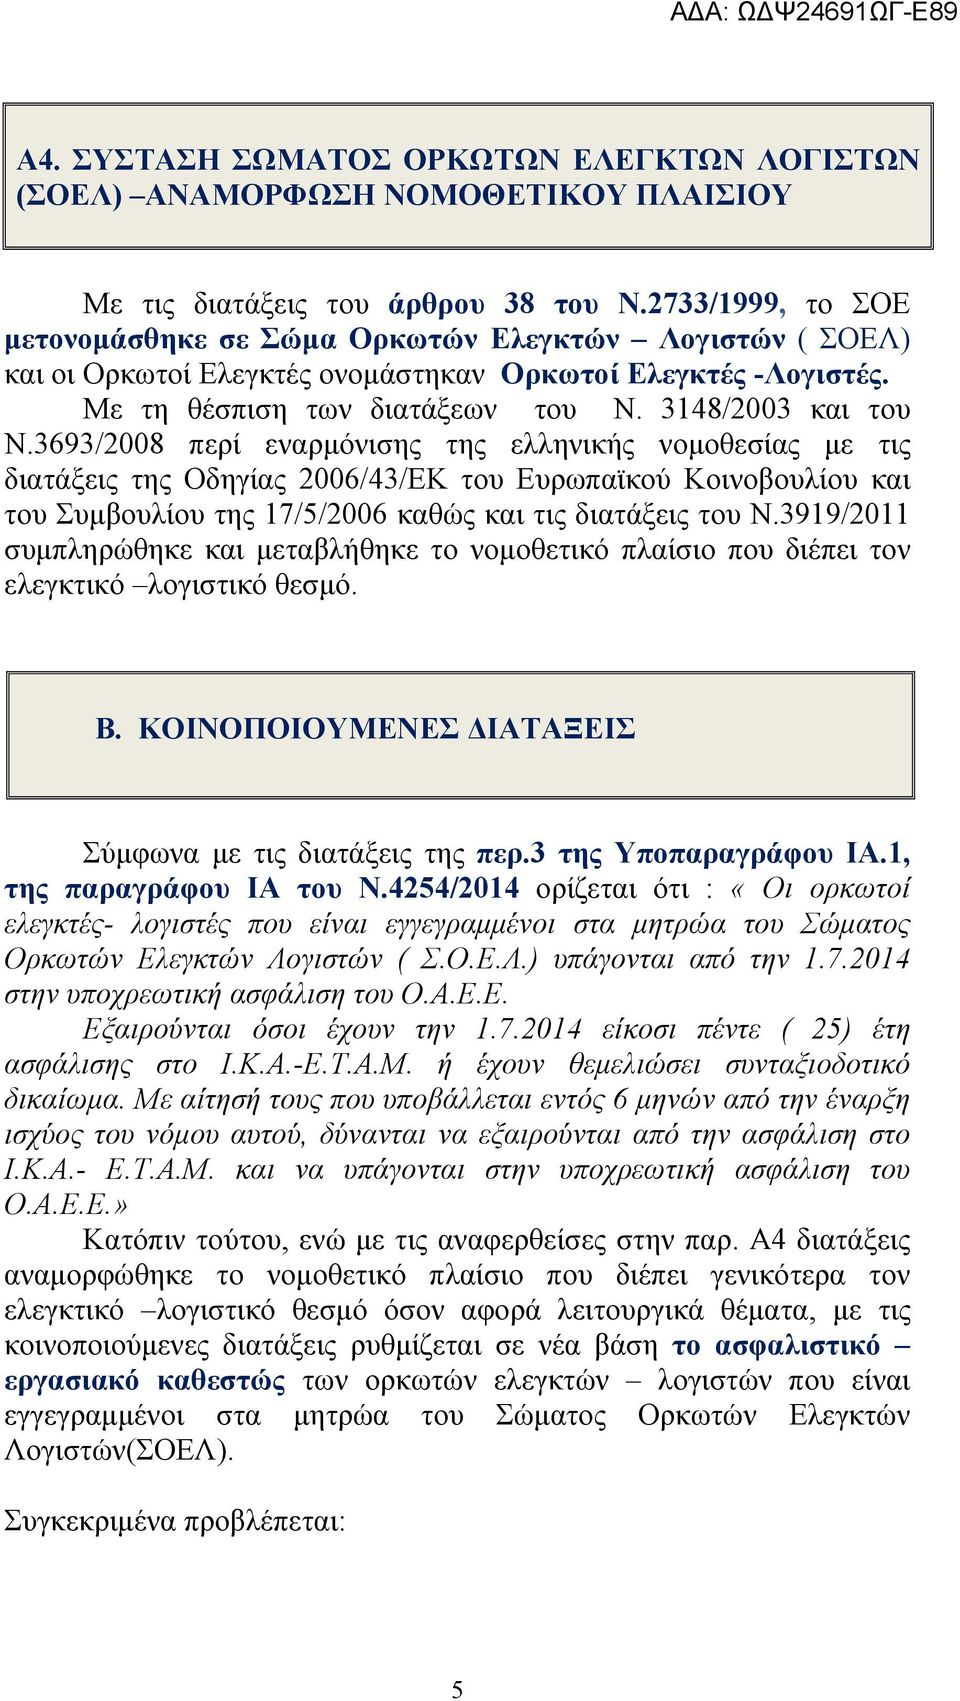 3693/2008 περί εναρμόνισης της ελληνικής νομοθεσίας με τις διατάξεις της Οδηγίας 2006/43/ΕΚ του Ευρωπαϊκού Κοινοβουλίου και του Συμβουλίου της 17/5/2006 καθώς και τις διατάξεις του Ν.